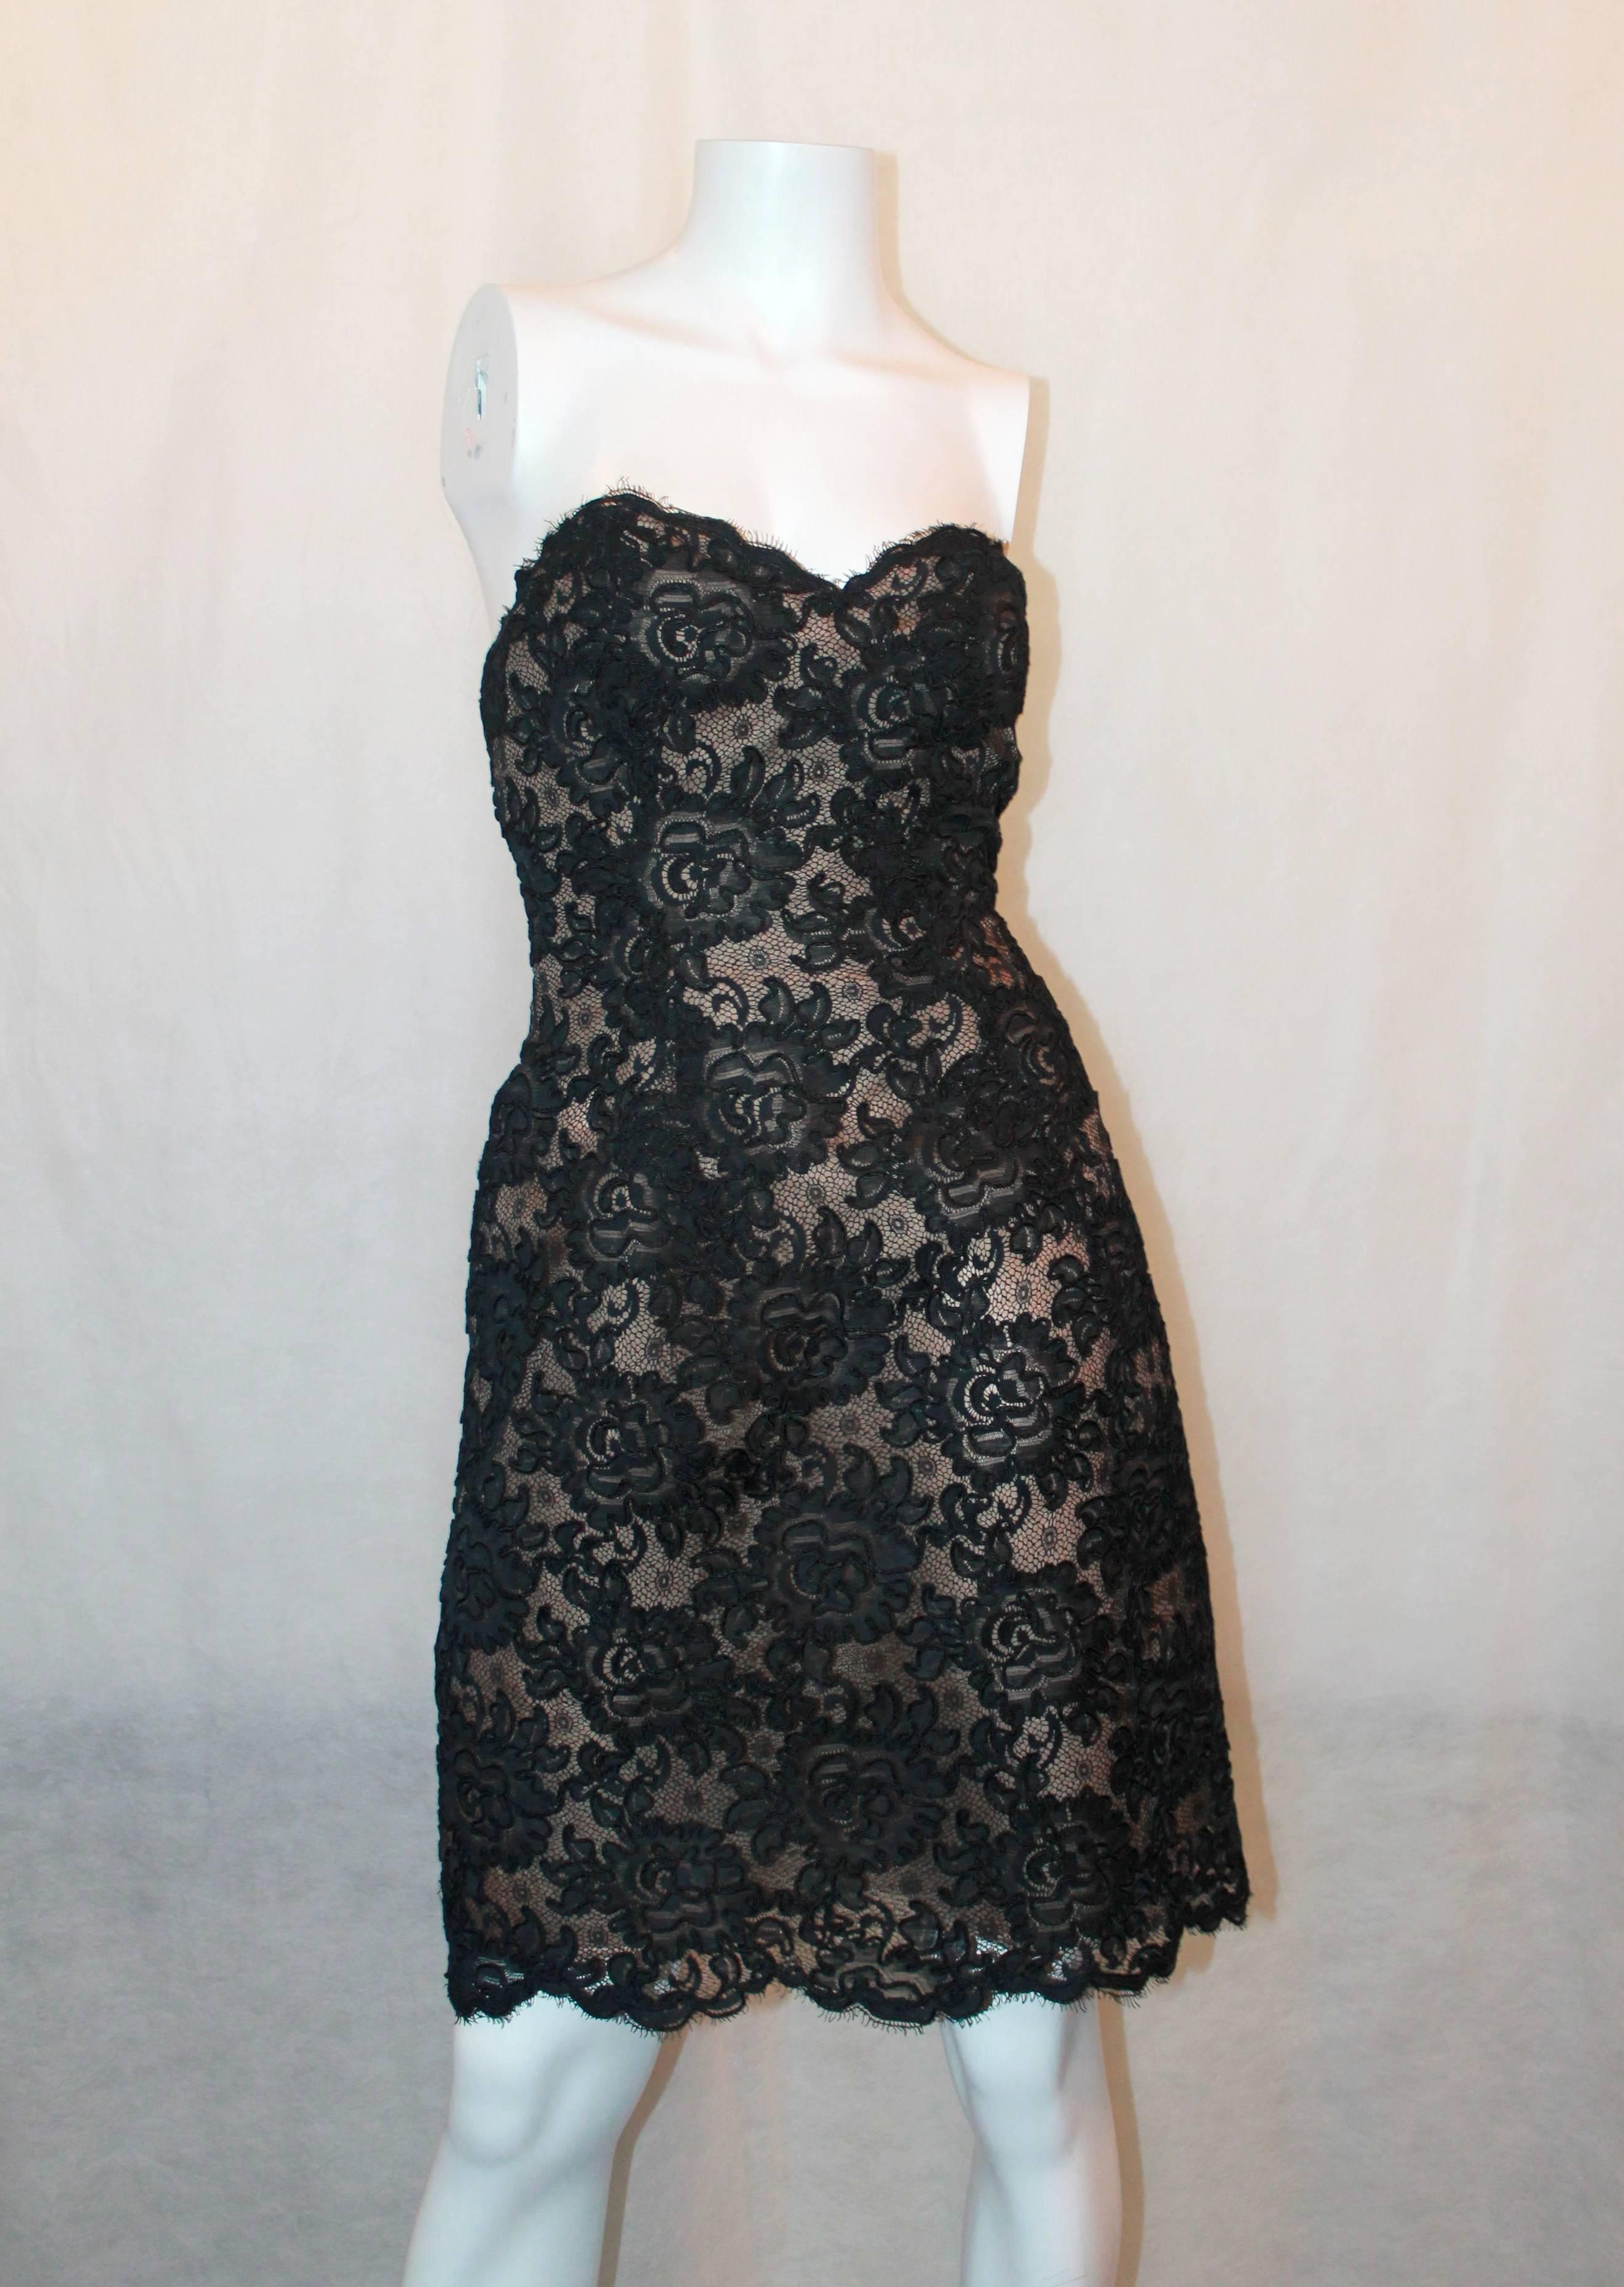 Oscar de la Renta 1990's Vintage Black Lace Soutache Dress & Coat - M 1